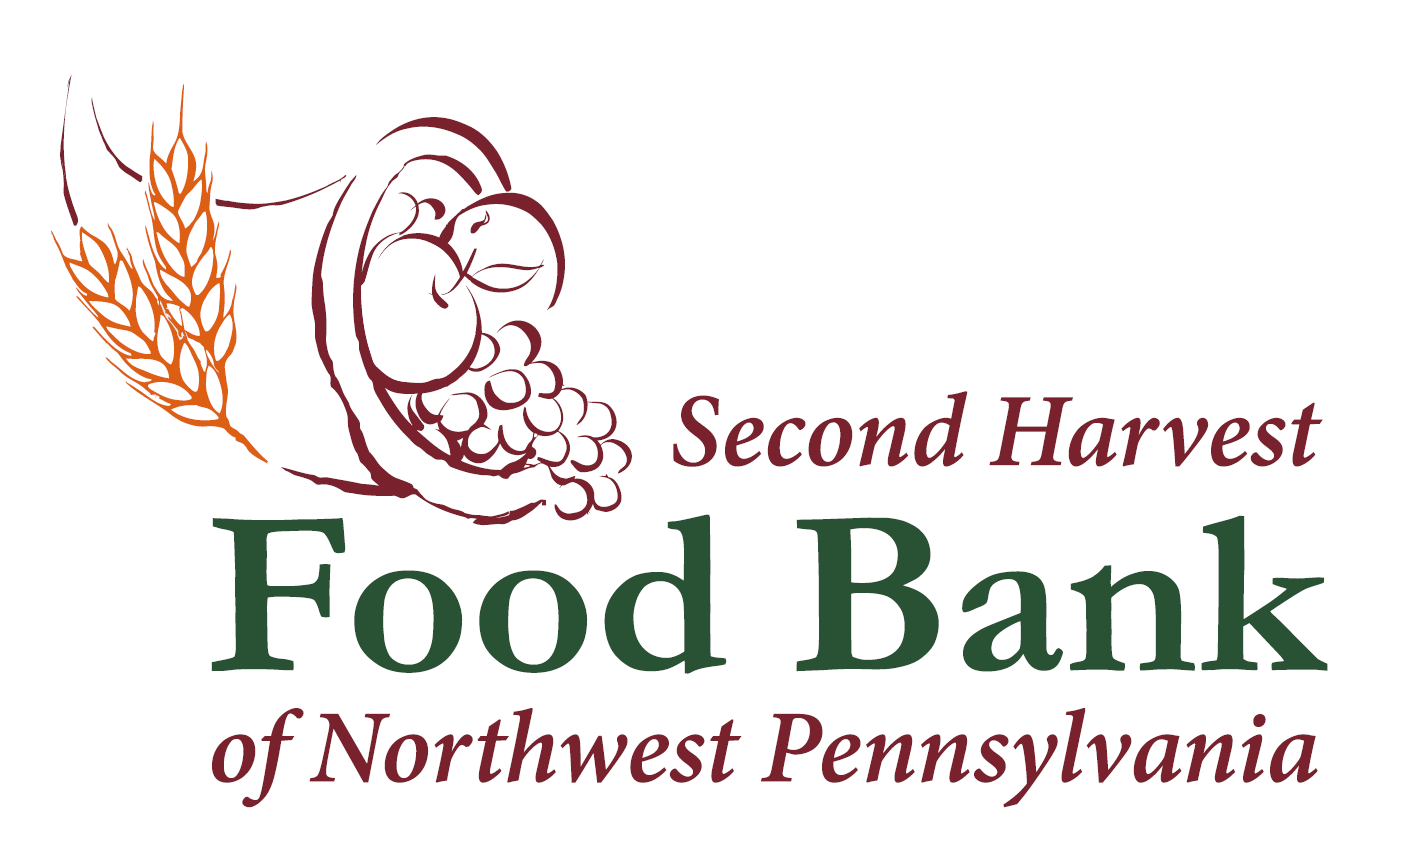 Second Harvest Food Bank General Food Distribution Program Warren Gives